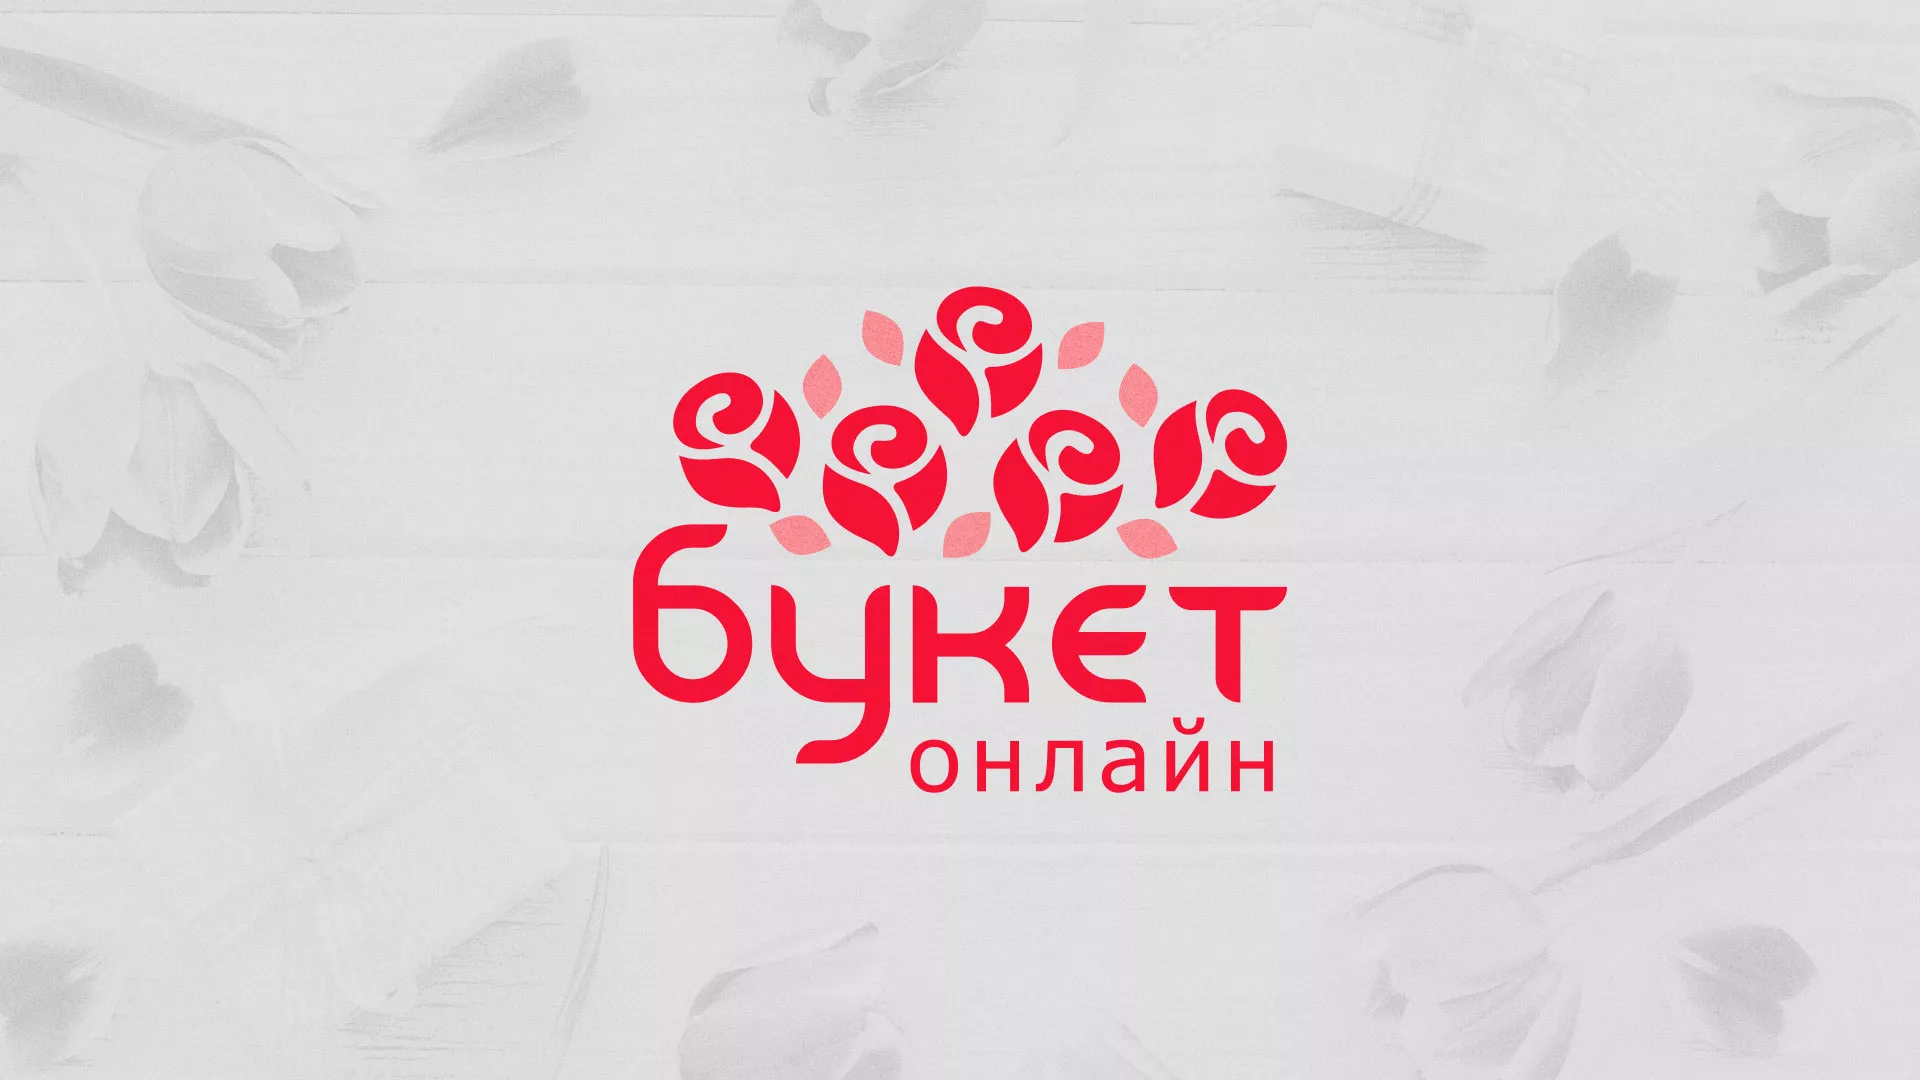 Создание интернет-магазина «Букет-онлайн» по цветам в Солнечногорске